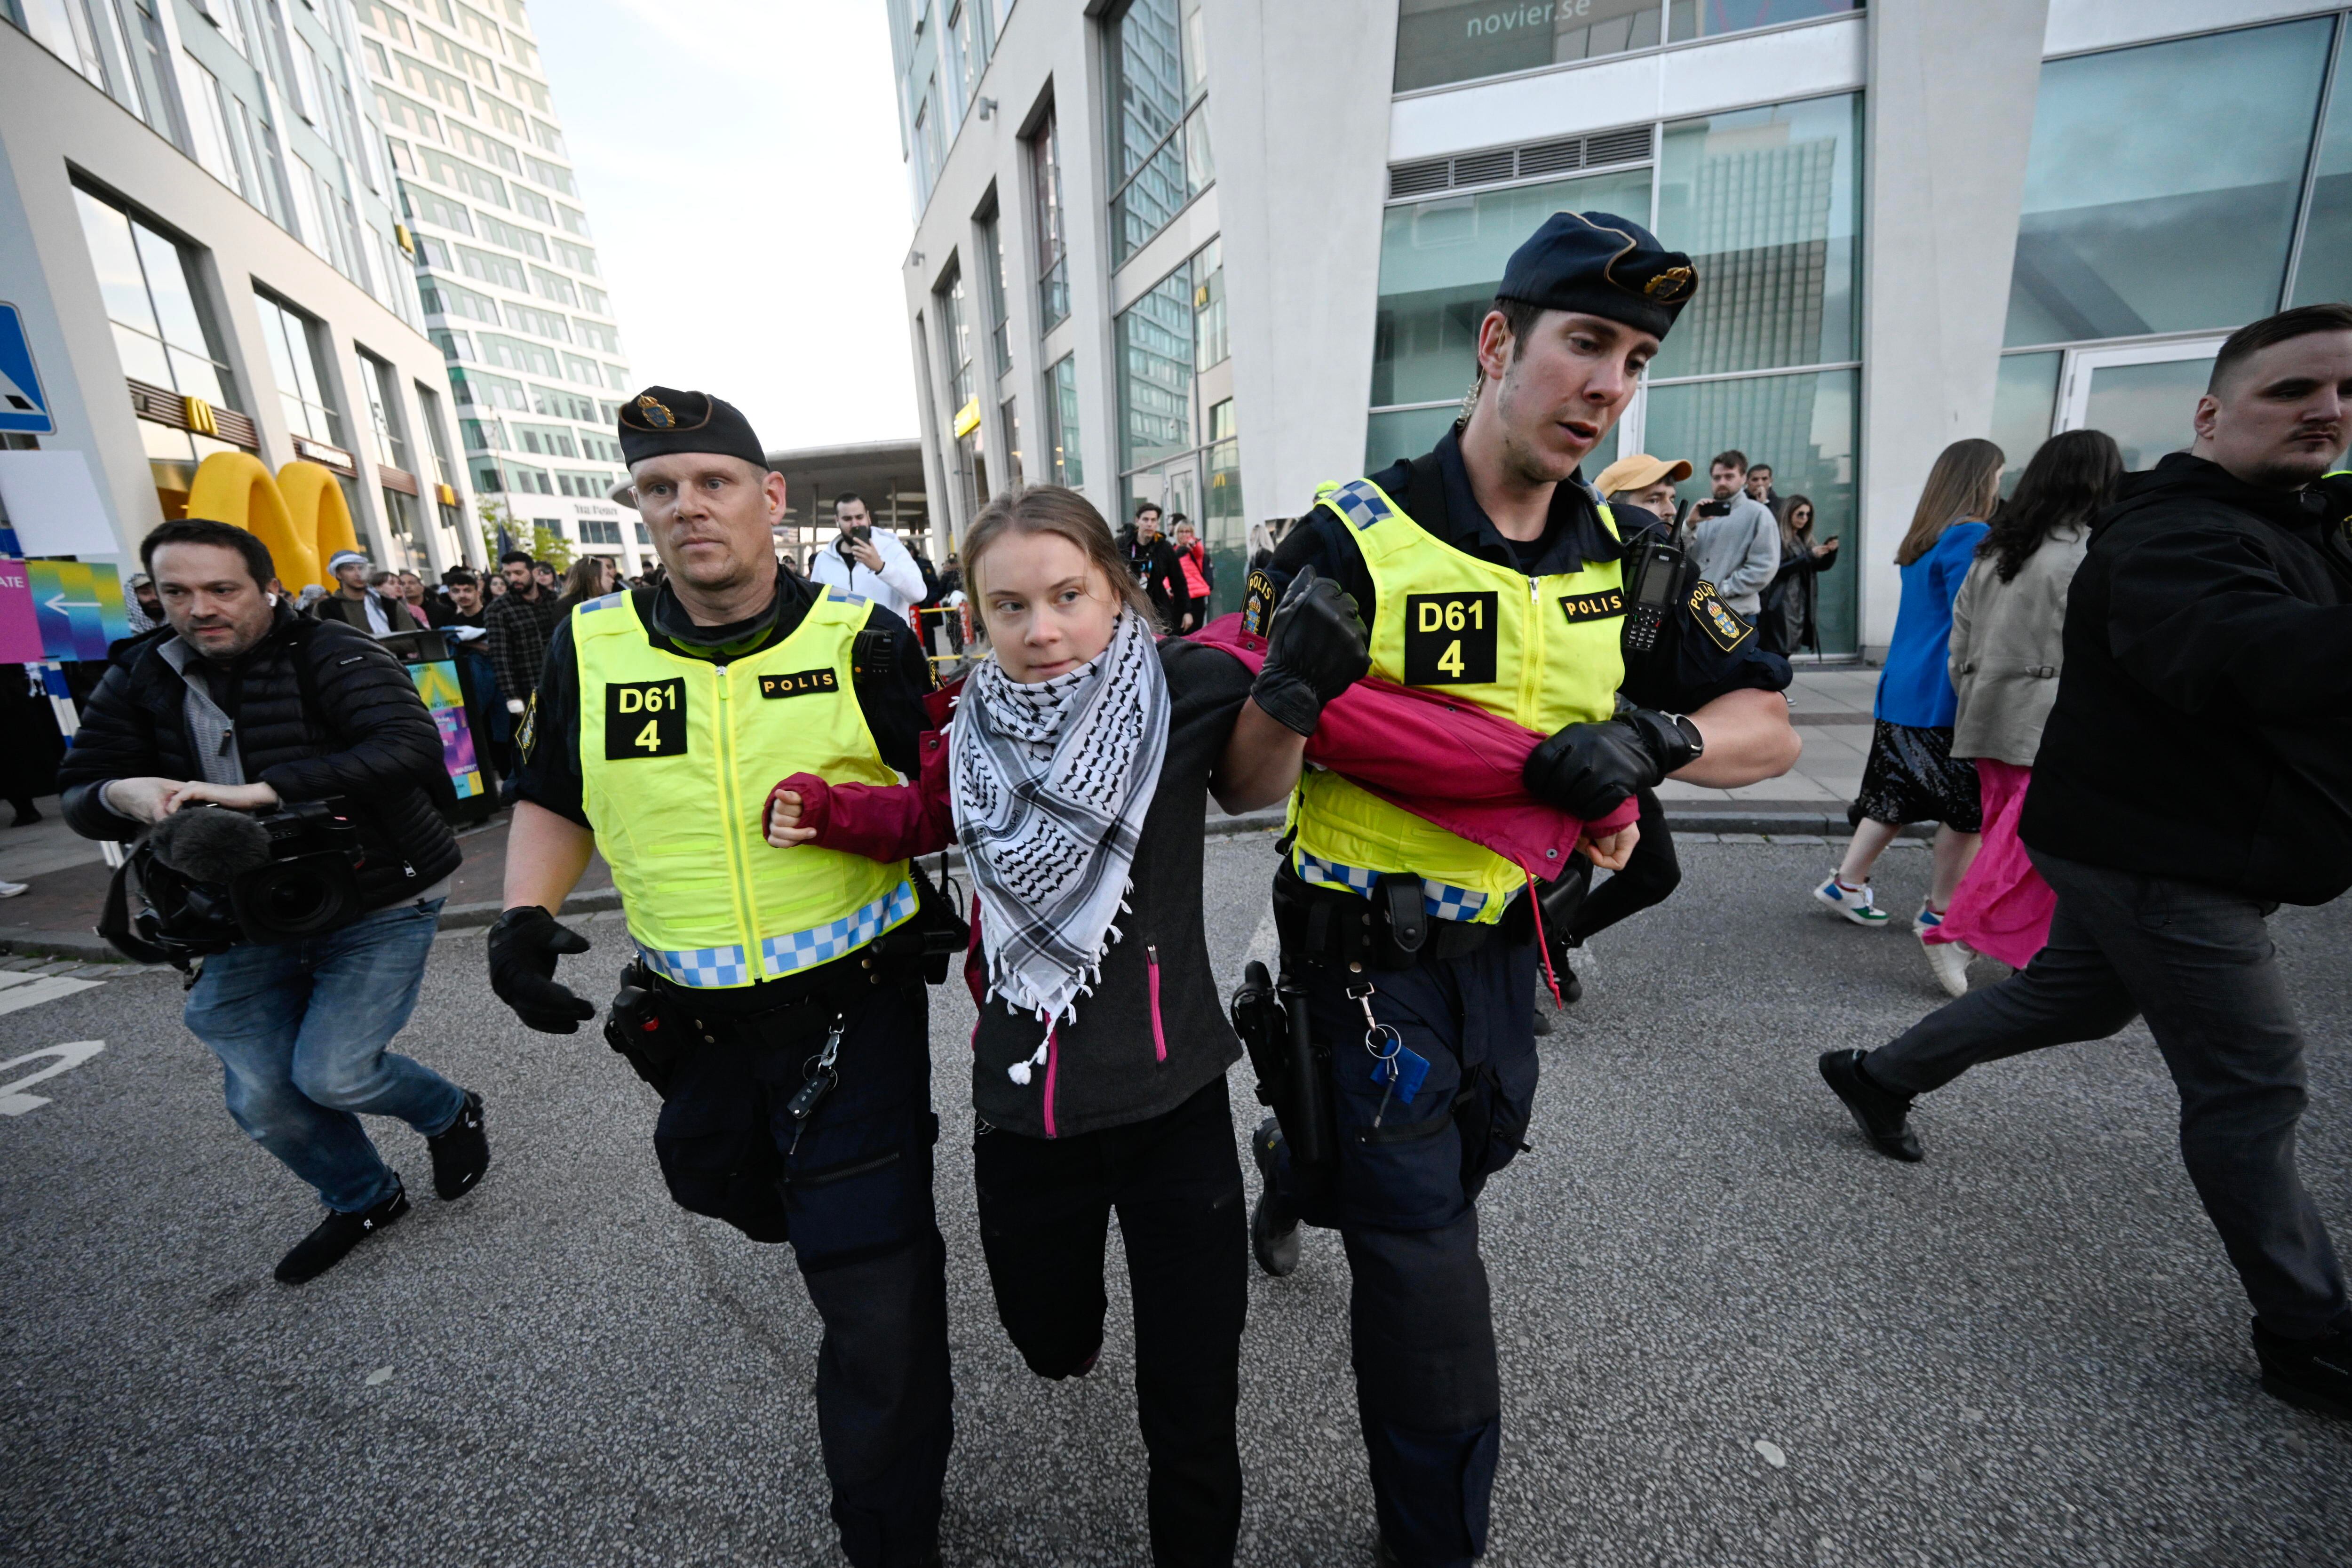 La activista Greta Thunberg es llevada fuera de las puertas del Malmö Arena antes de la celebración del festival.